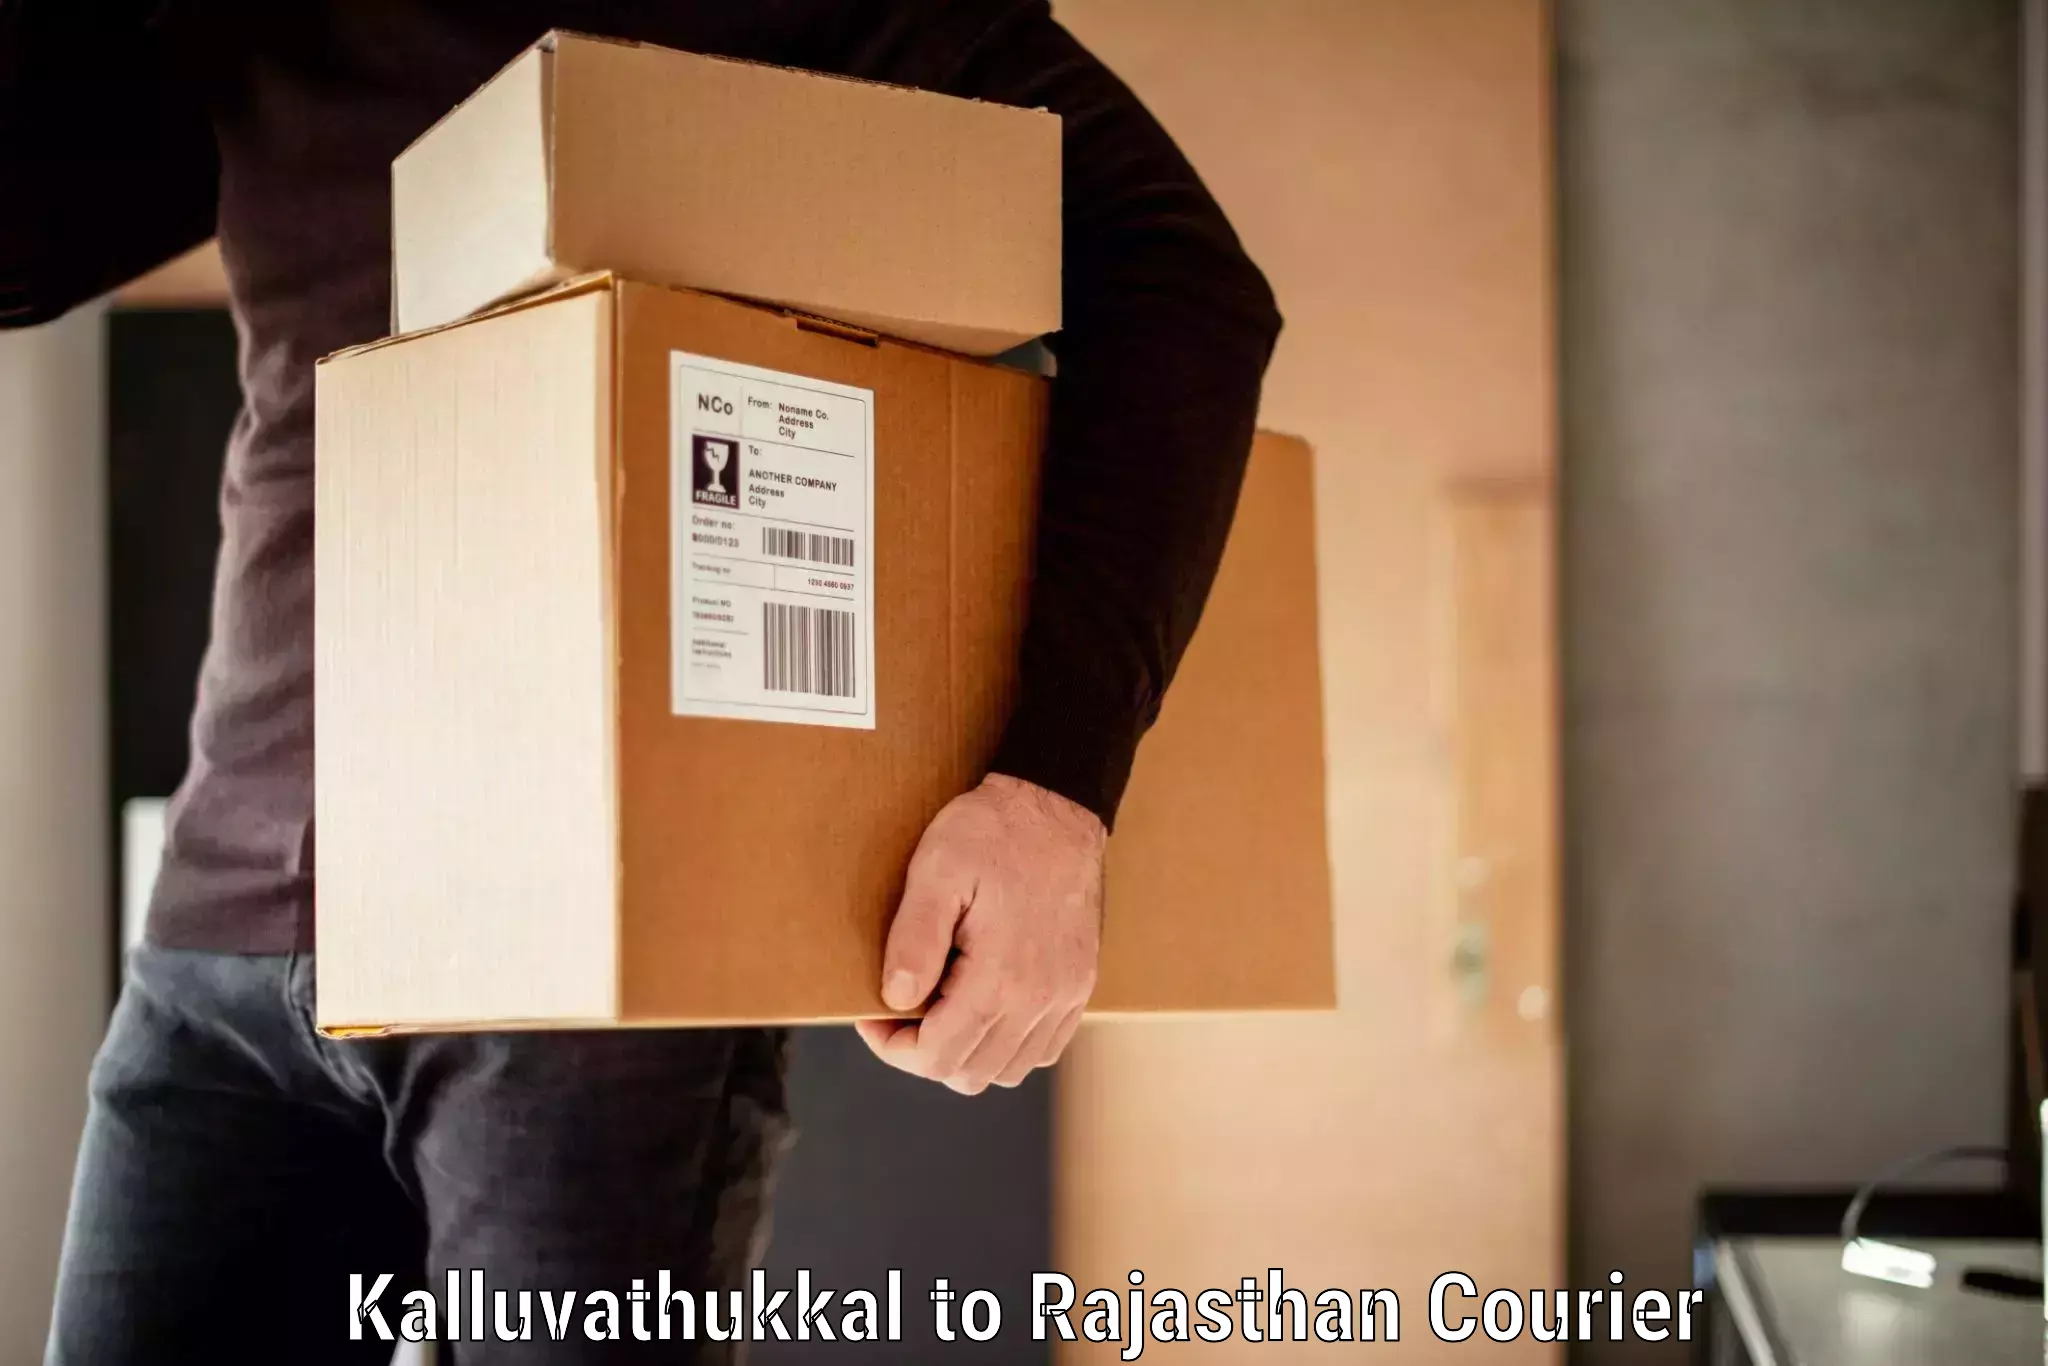 Door-to-door baggage service Kalluvathukkal to Rajasthan